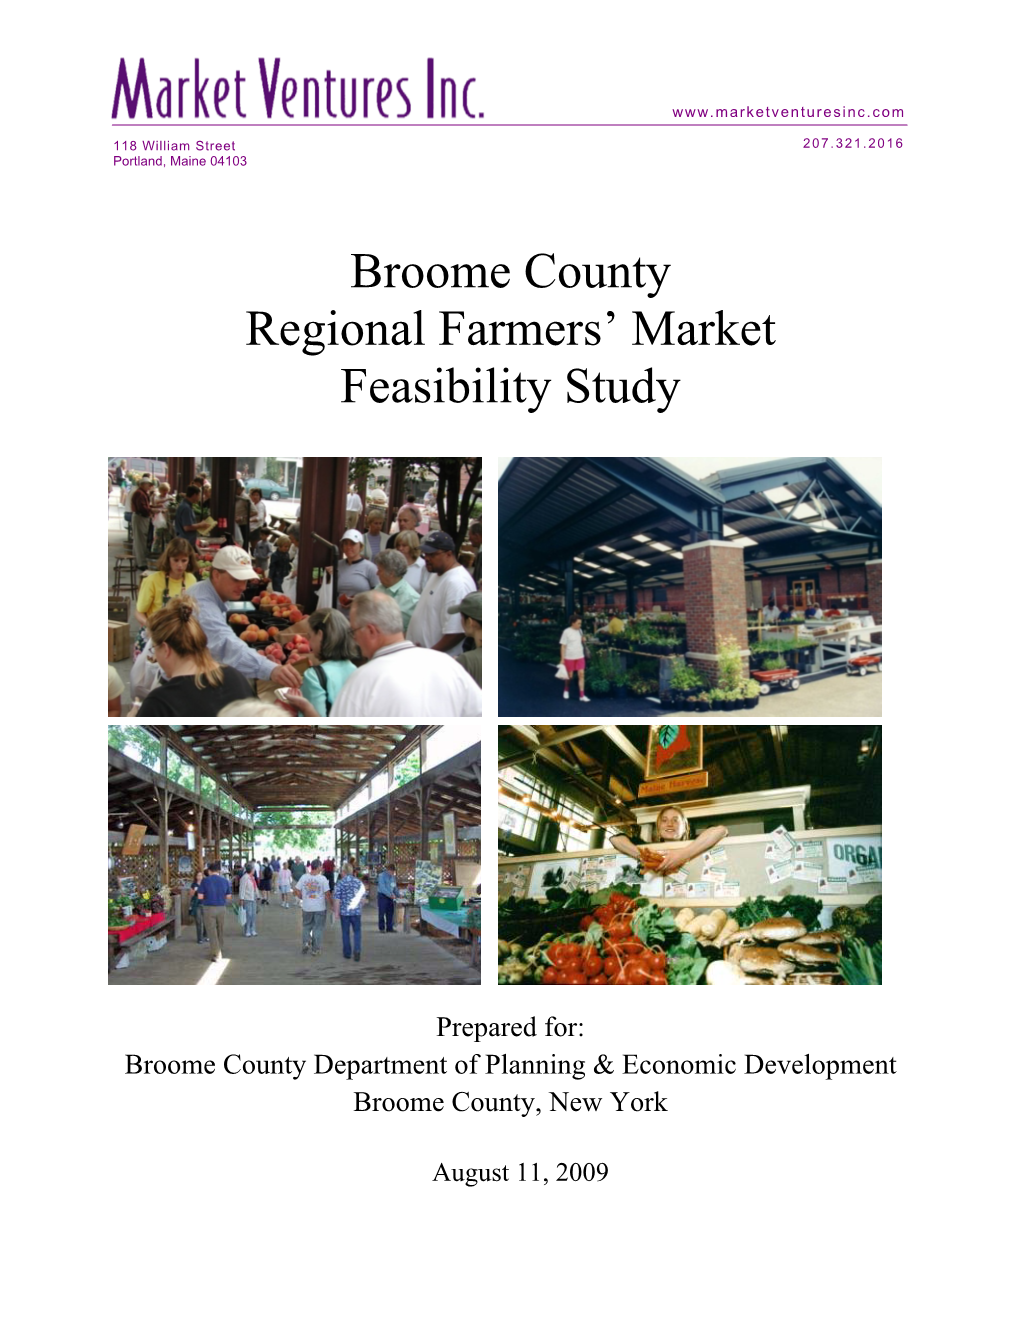 Regional Farmers' Market Feasiblity Study